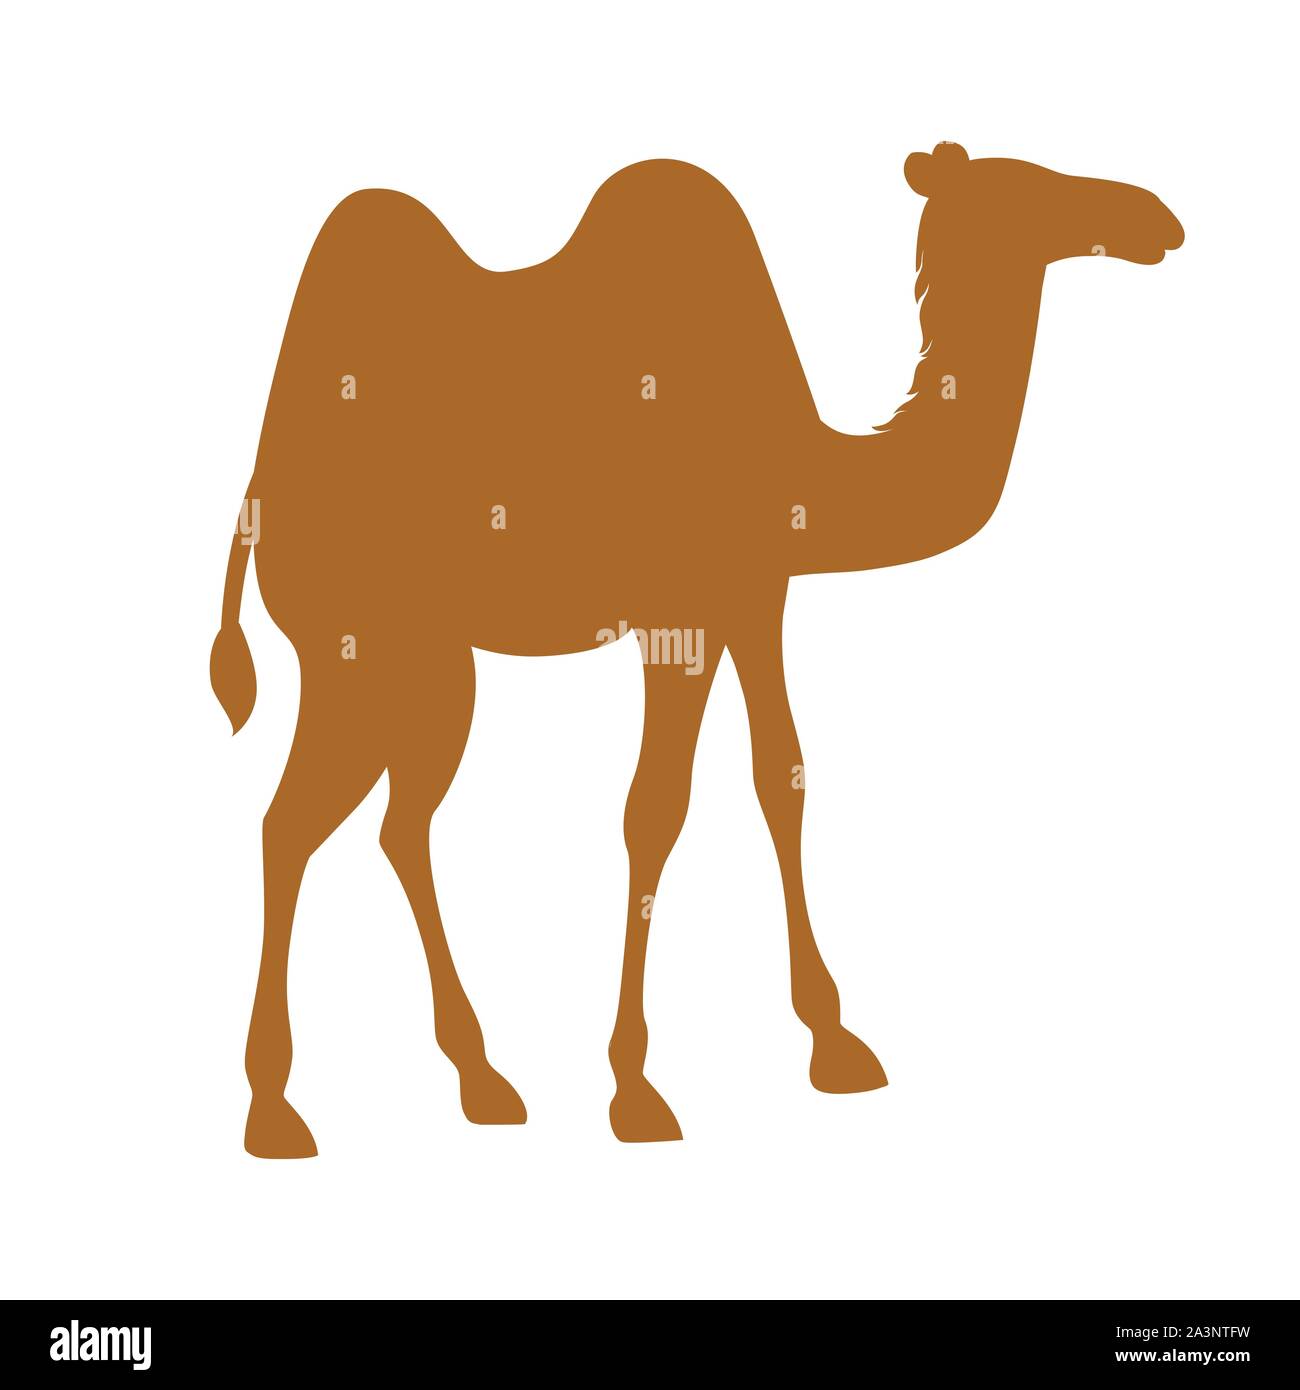 Deux silhouette marron camel hump cartoon animal télévision design vector illustration isolé sur fond blanc. Illustration de Vecteur